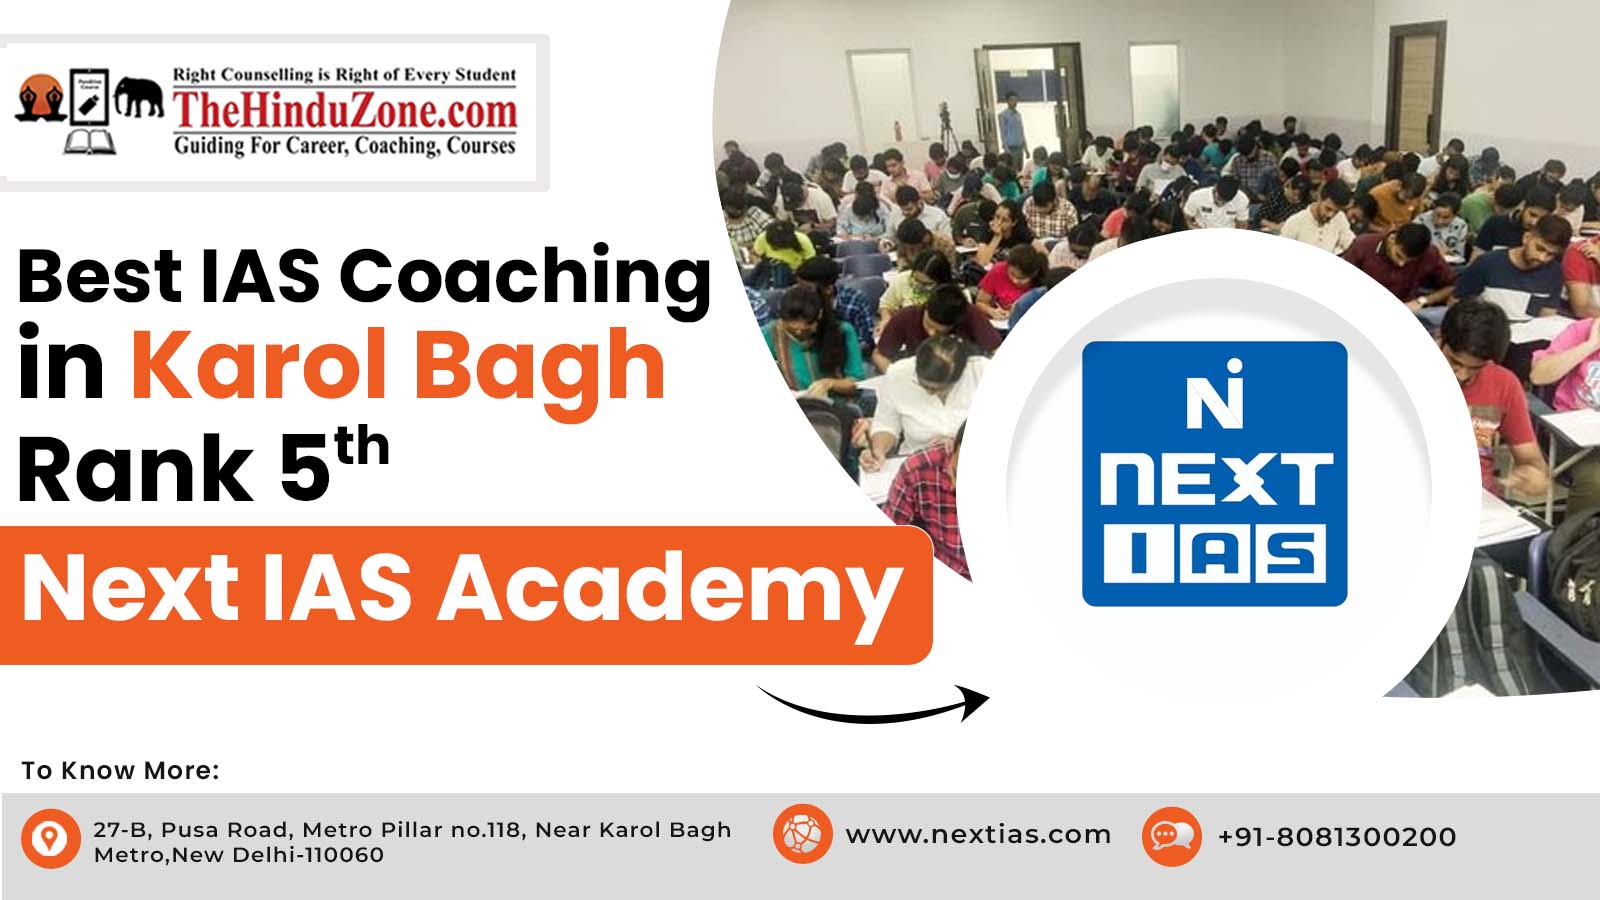 Best 10 IAS Coaching in Karol Bagh